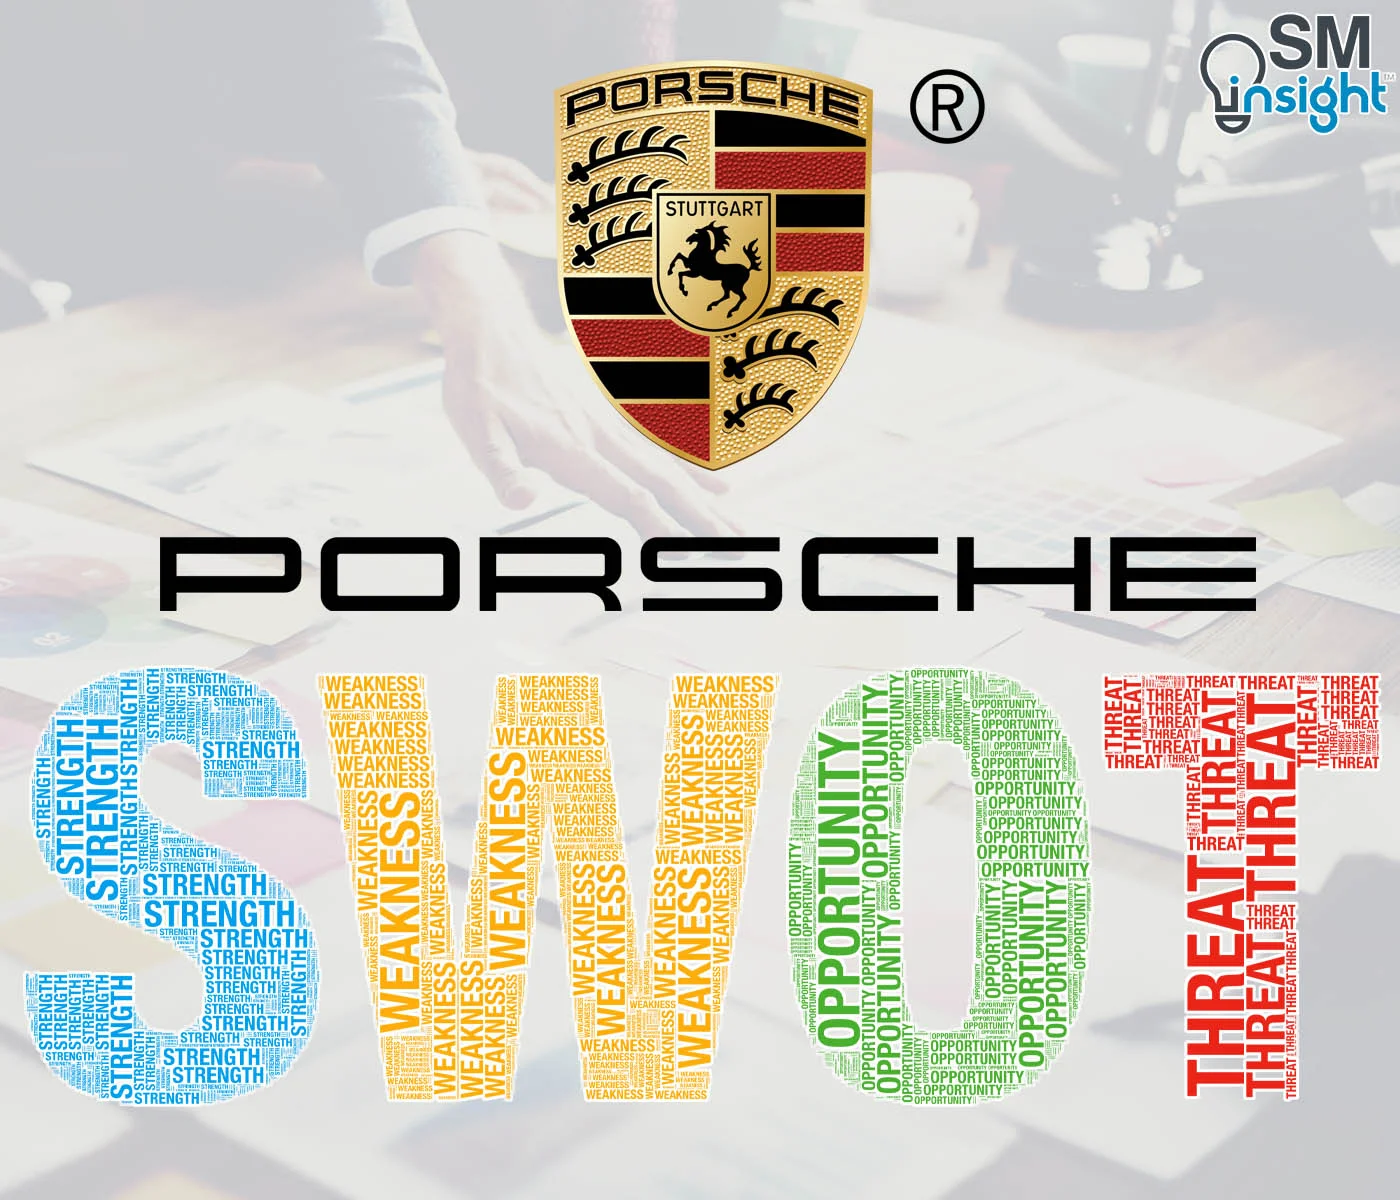 Porsche SWOT Analysis